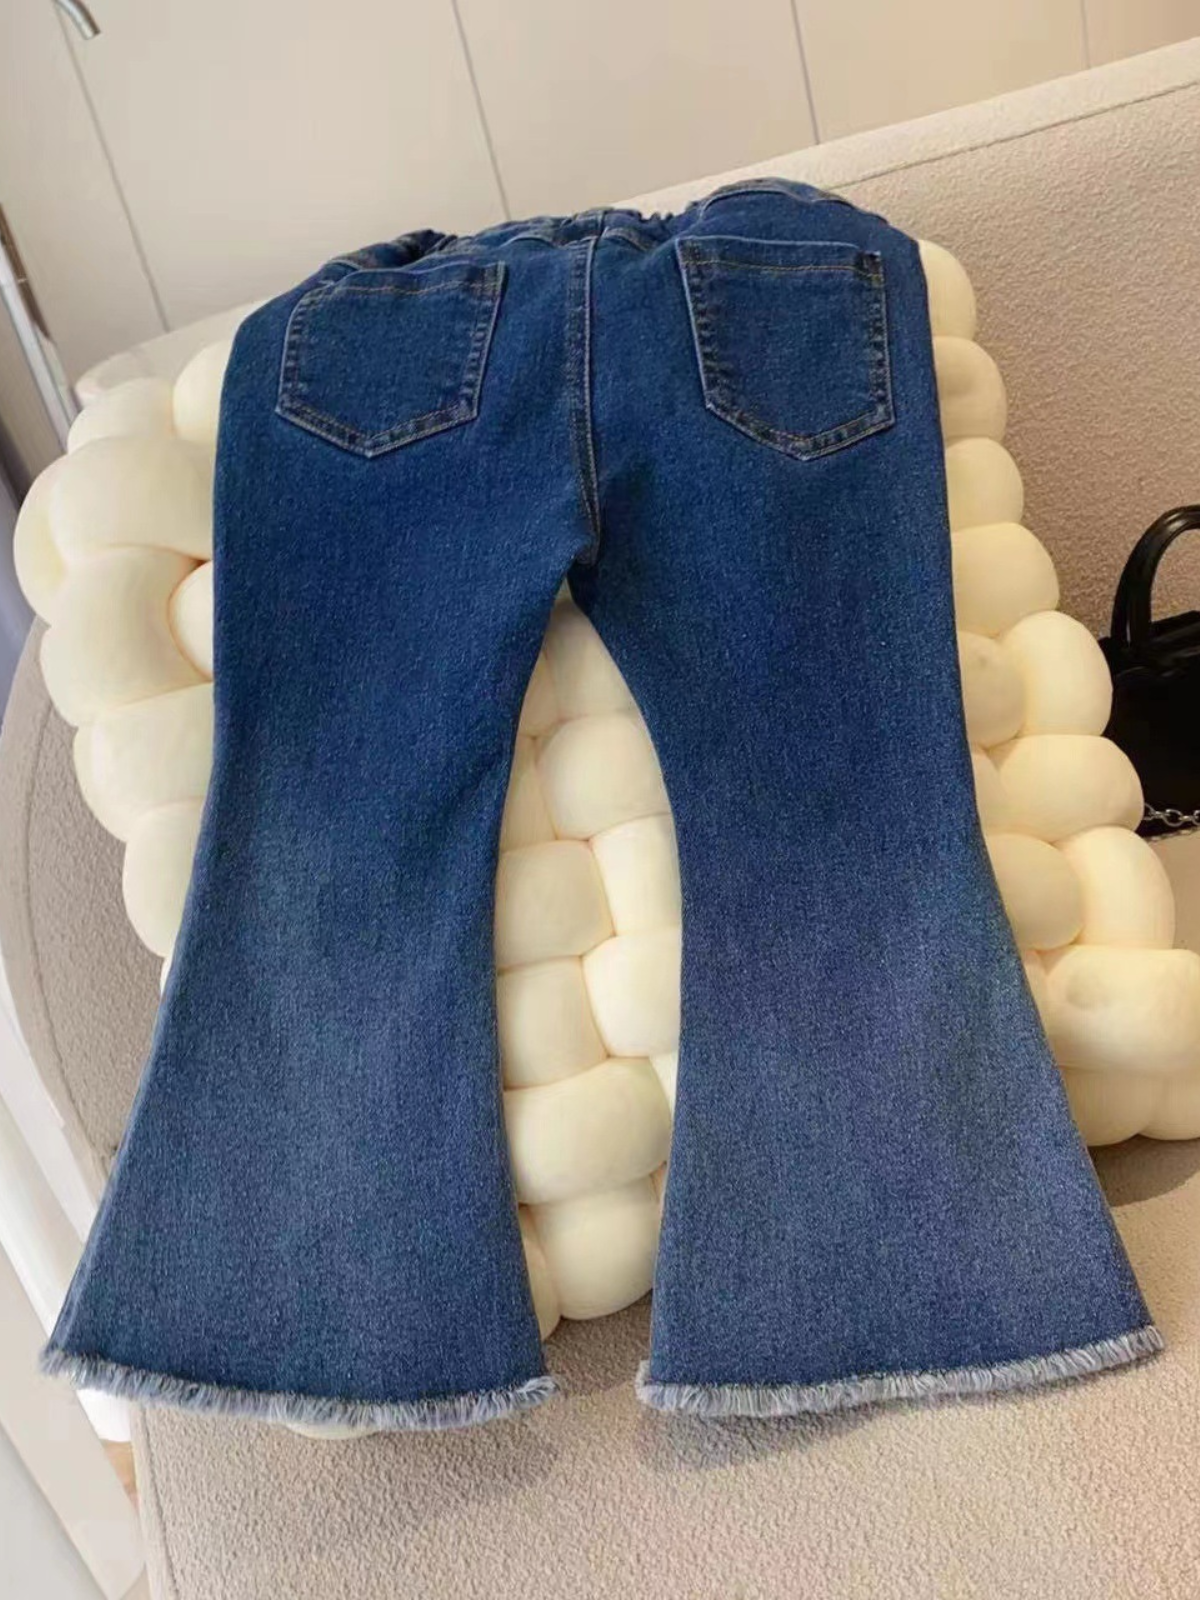 Mia Belle Girls Bell Bottom Frayed Jeans